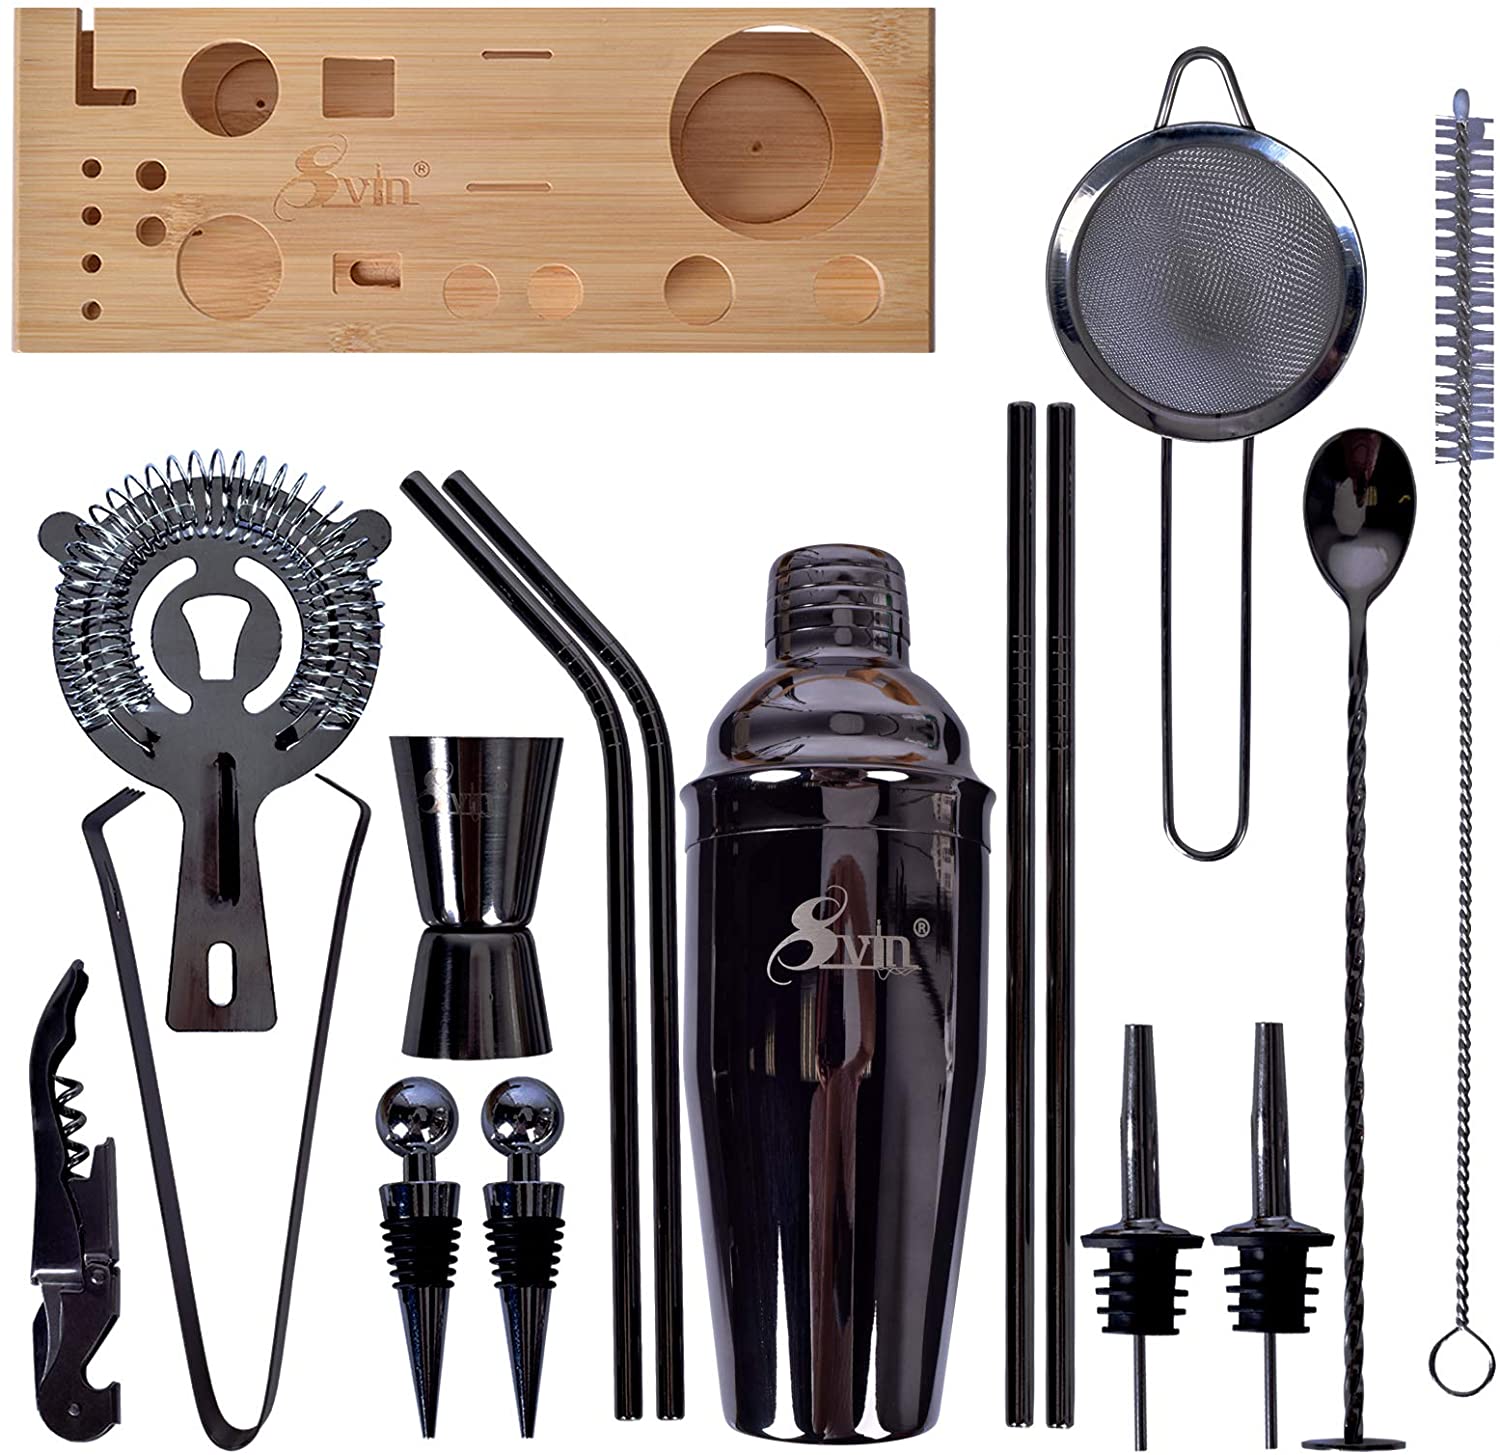 
  
  Kit de barman de 20 piezas, herramientas de barra de acero inoxidable para bebidas
  
